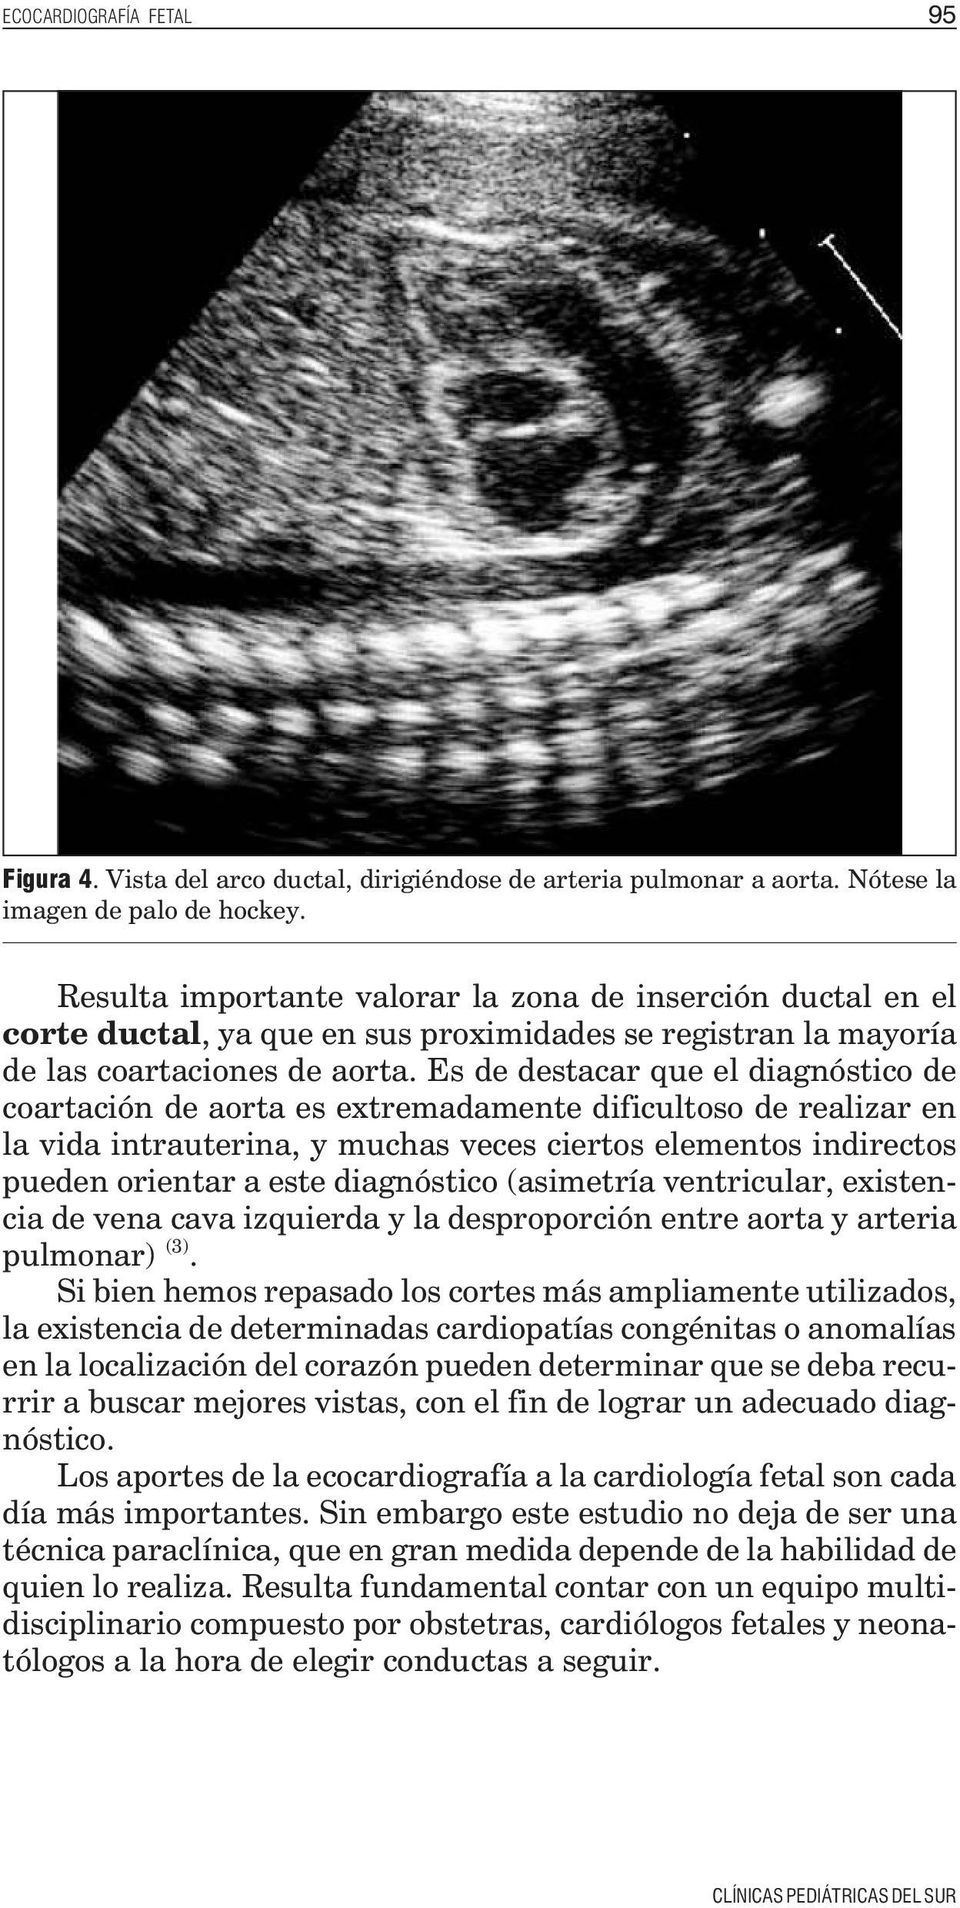 Es de destacar que el diagnóstico de coartación de aorta es extremadamente dificultoso de realizar en la vida intrauterina, y muchas veces ciertos elementos indirectos pueden orientar a este